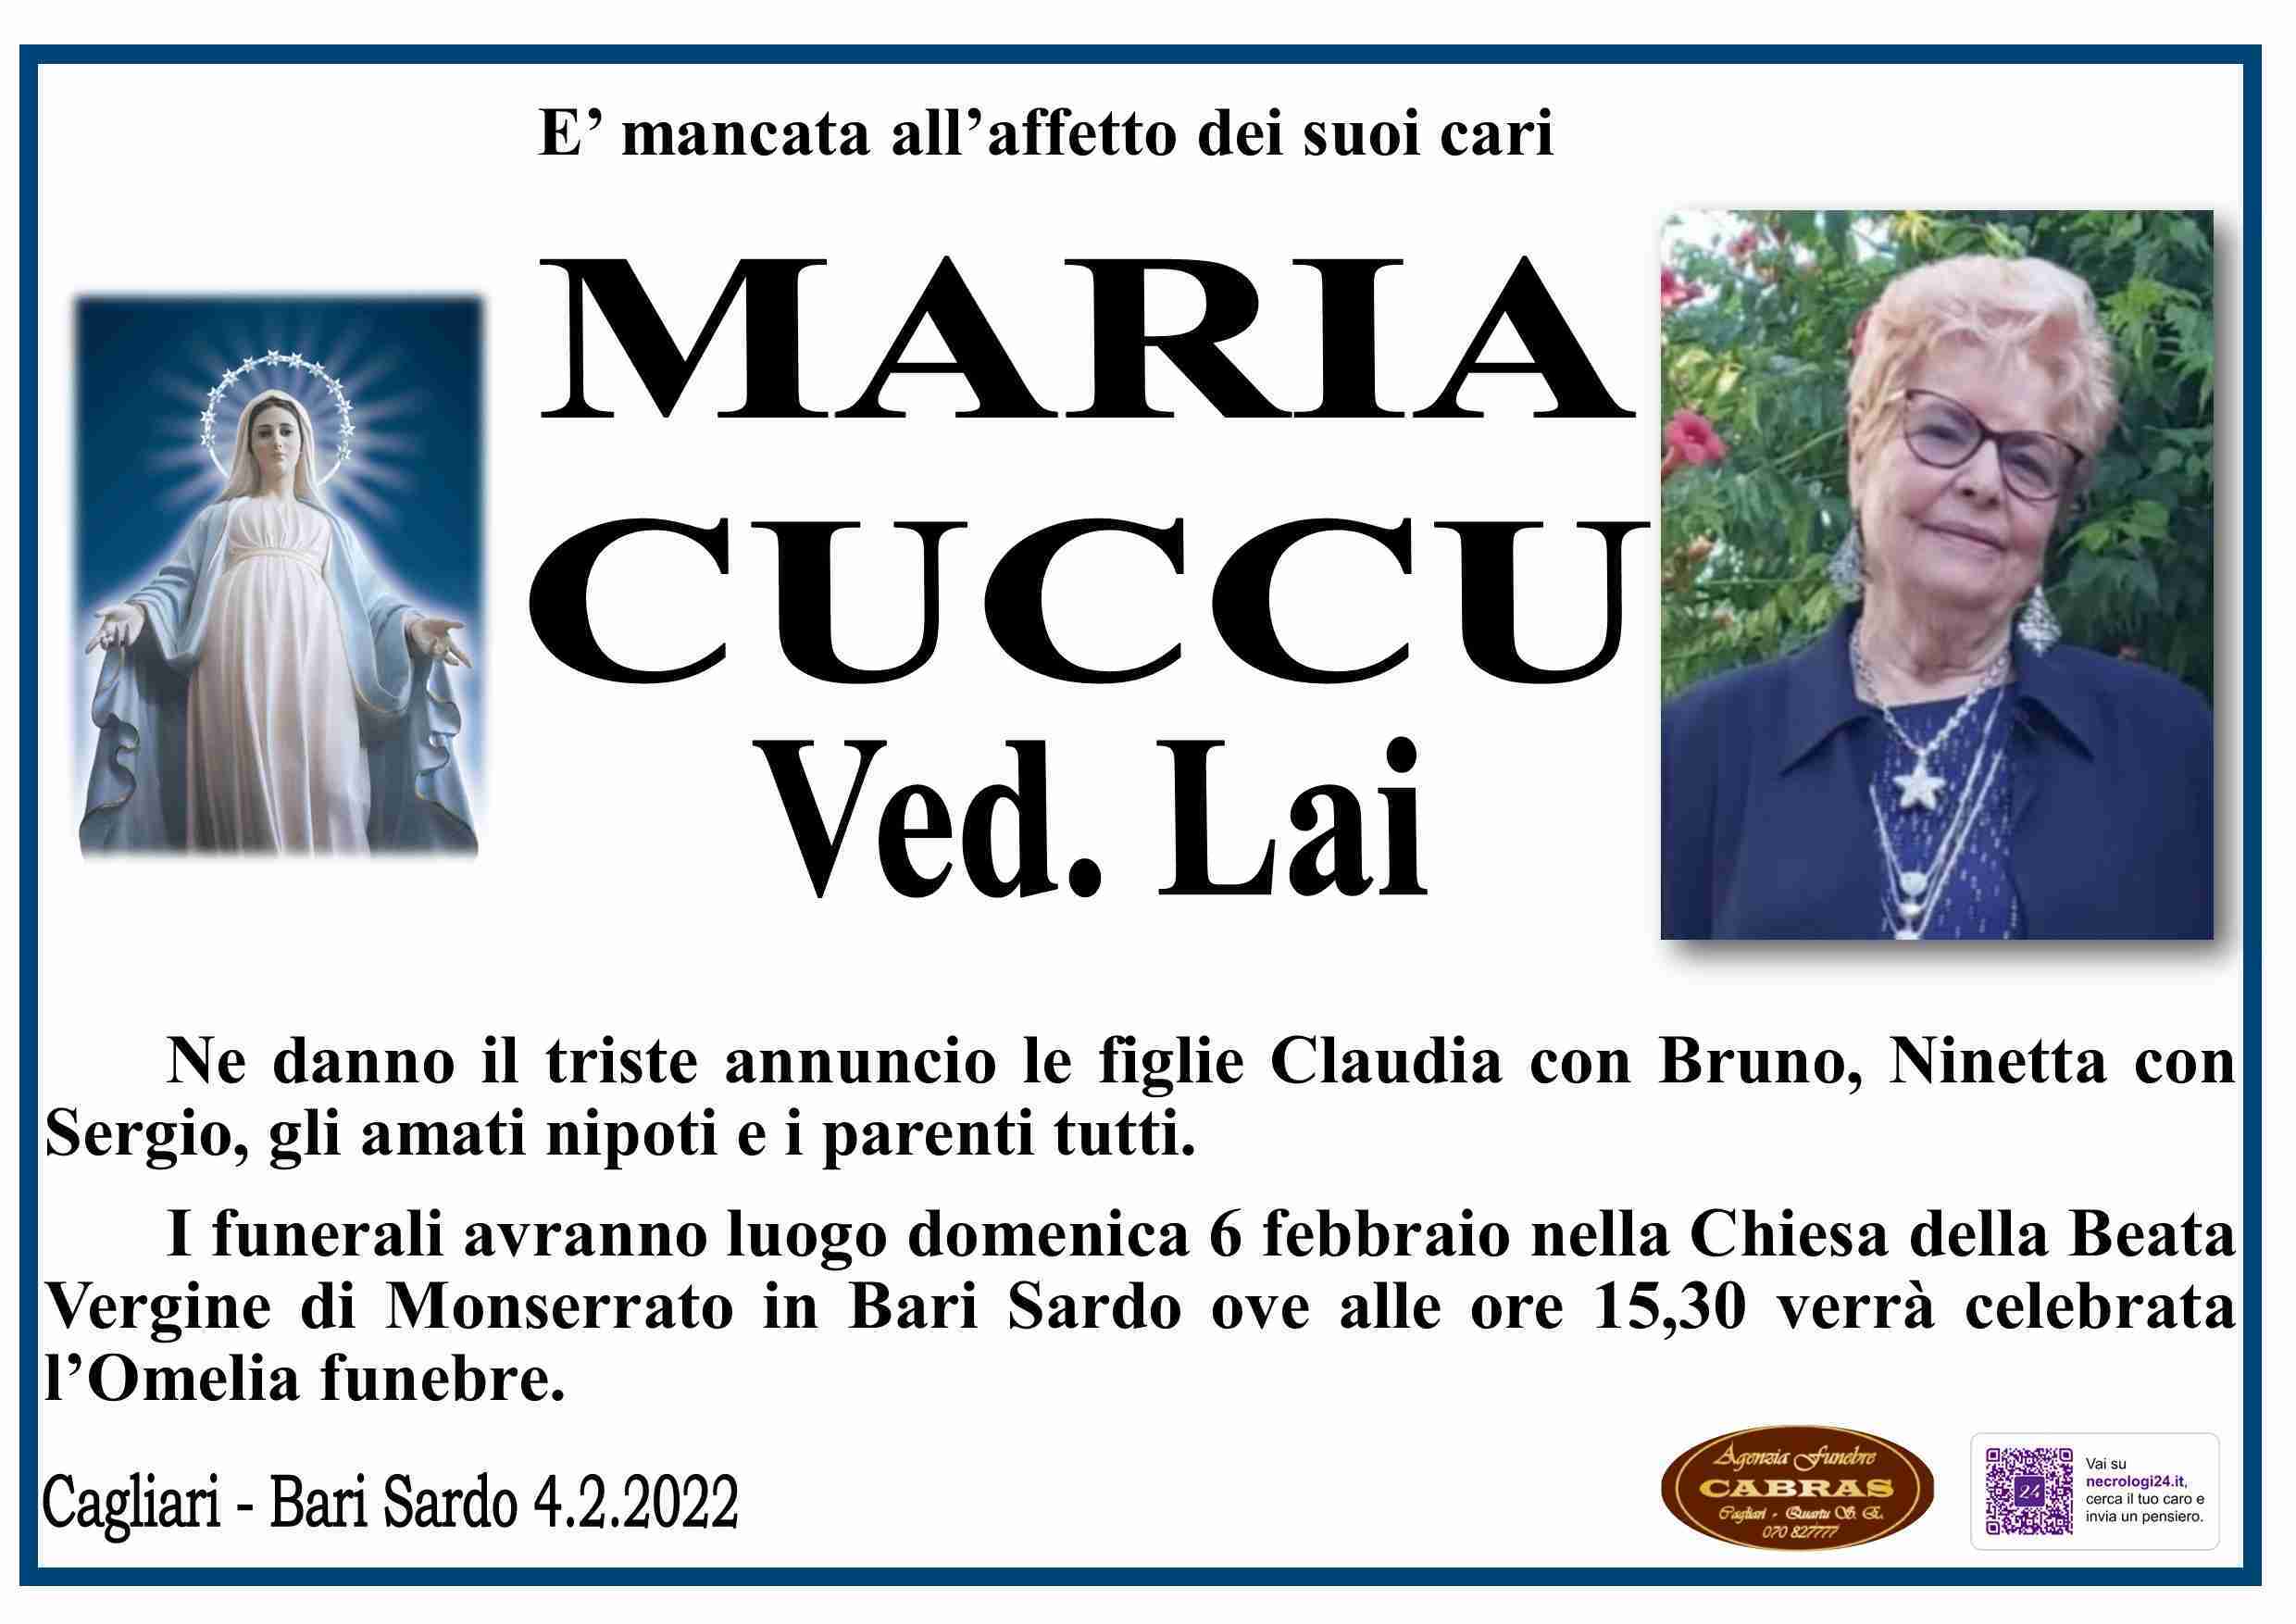 Maria Cuccu